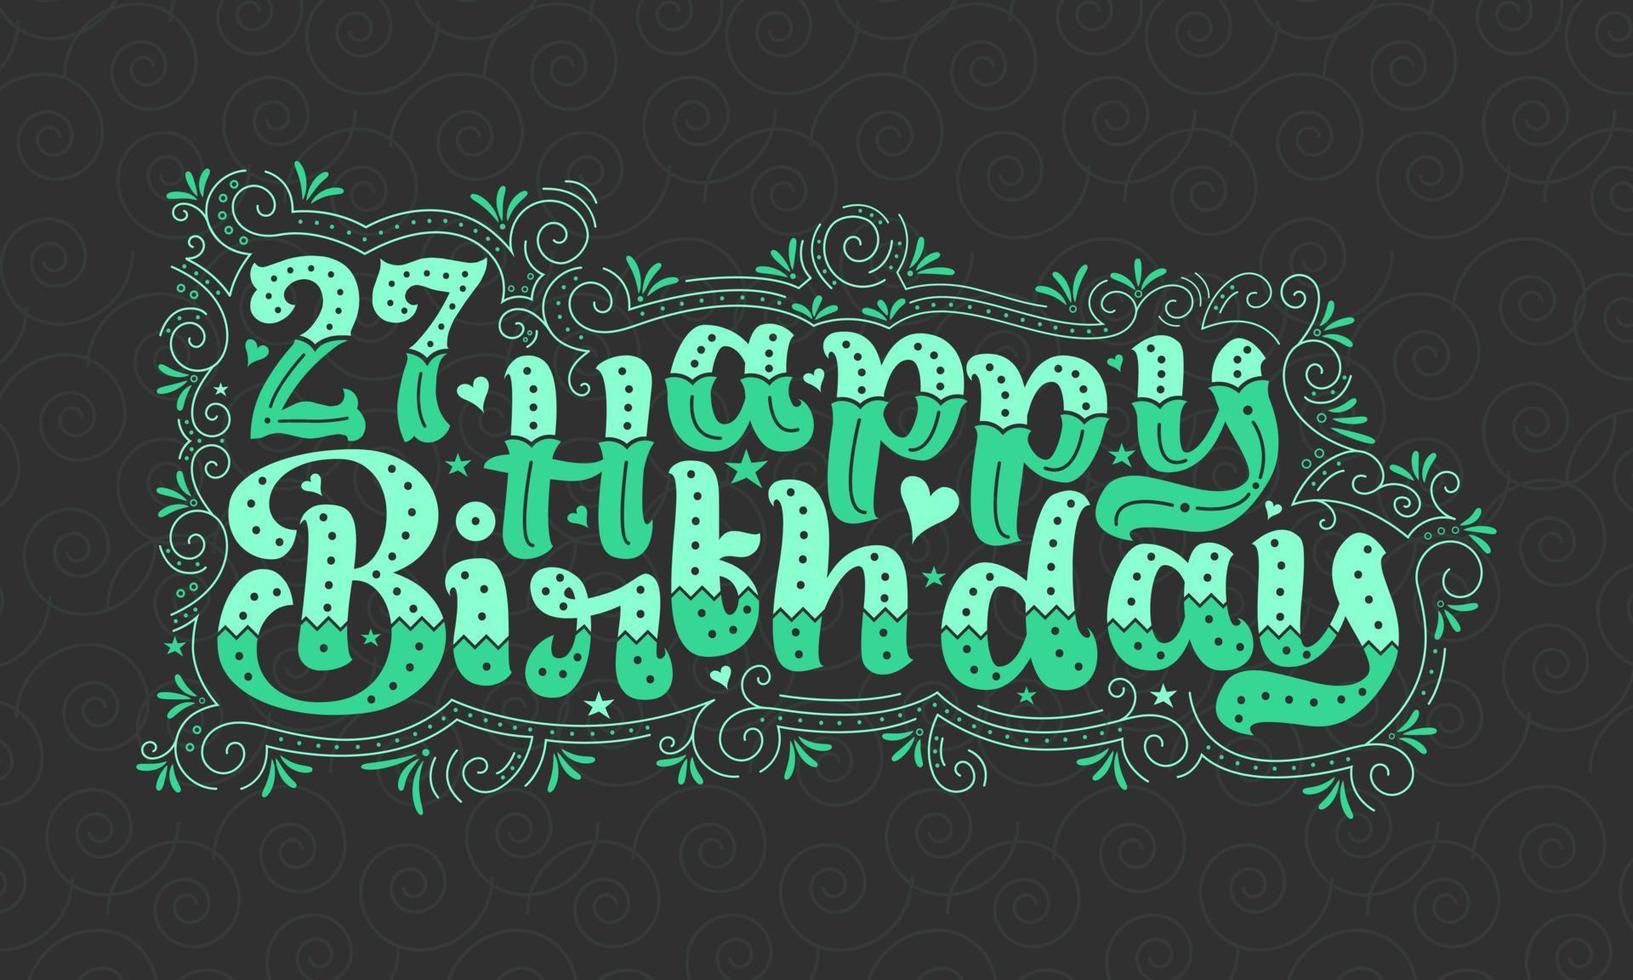 27º feliz aniversário letras, 27 anos de aniversário lindo design de tipografia com pontos verdes, linhas e folhas. vetor